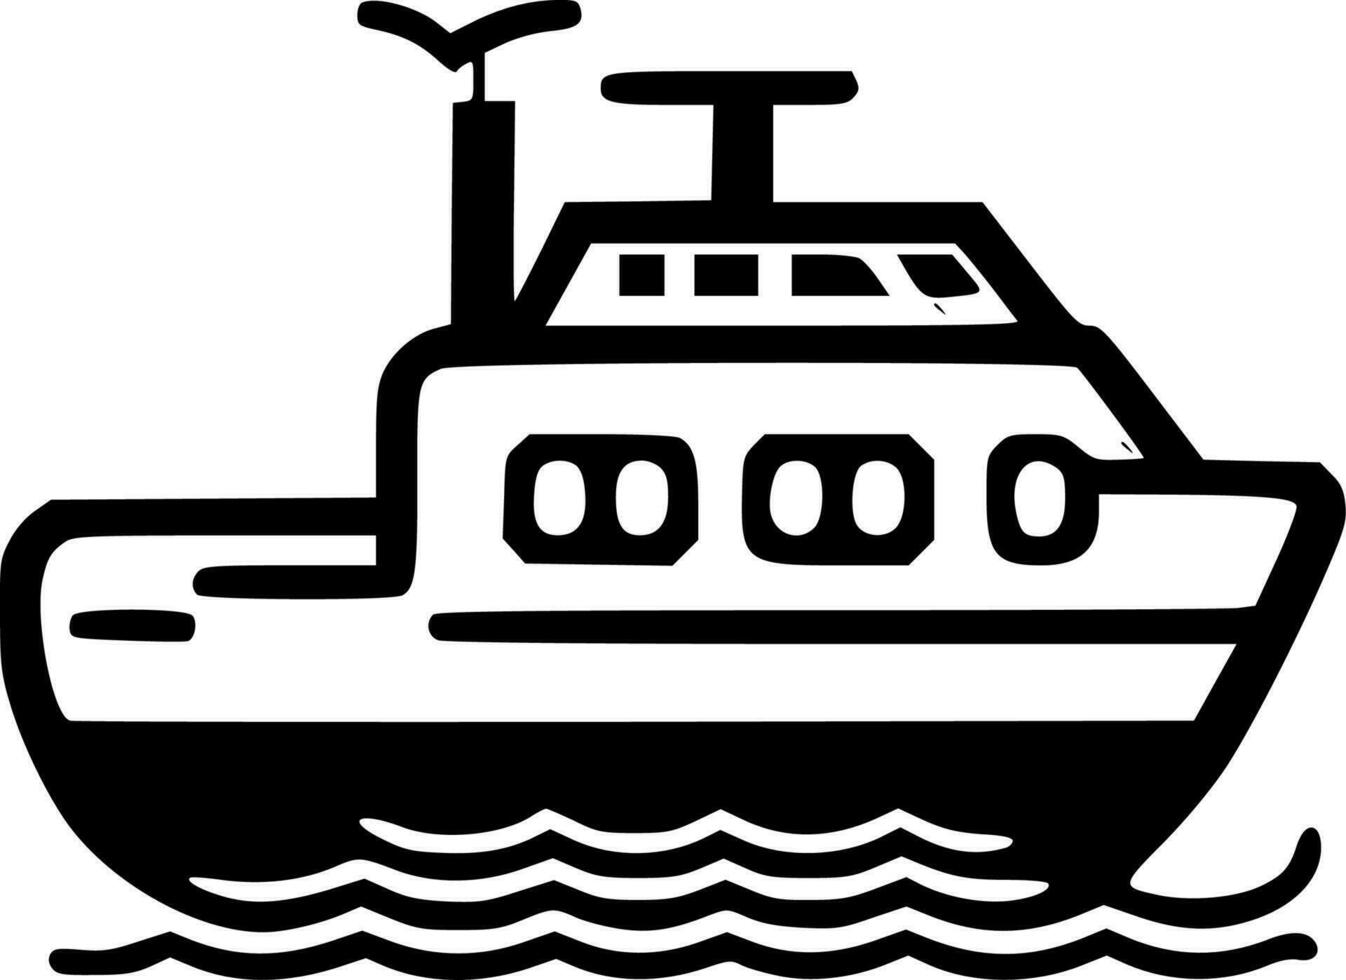 boot - zwart en wit geïsoleerd icoon - vector illustratie